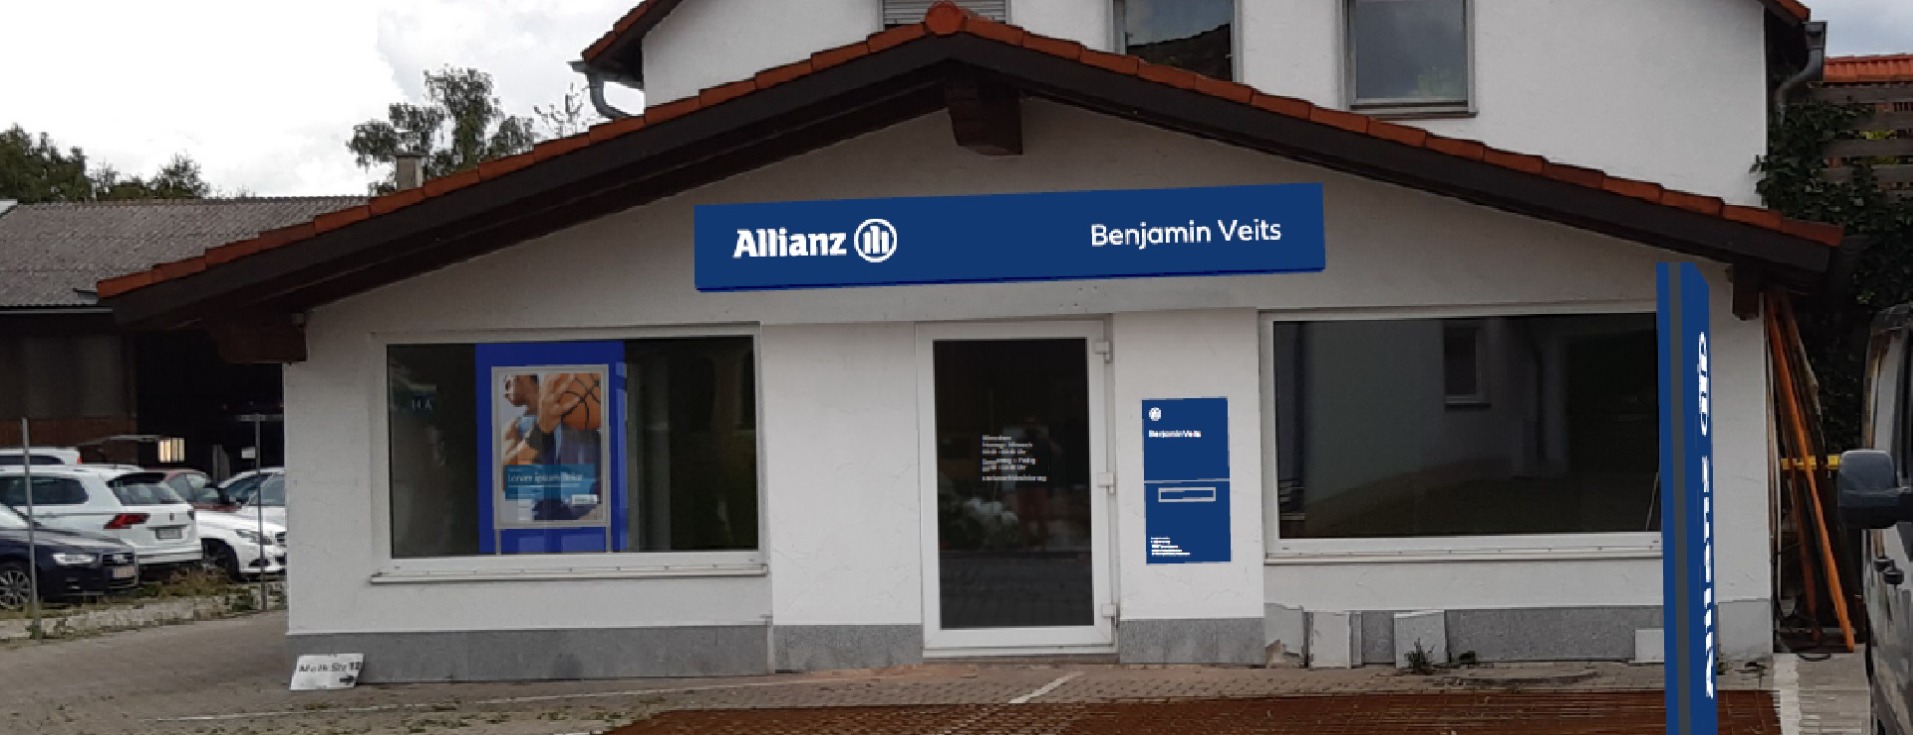 Allianz Versicherung Benjamin Veits Wiedergeltingen - Titelbild